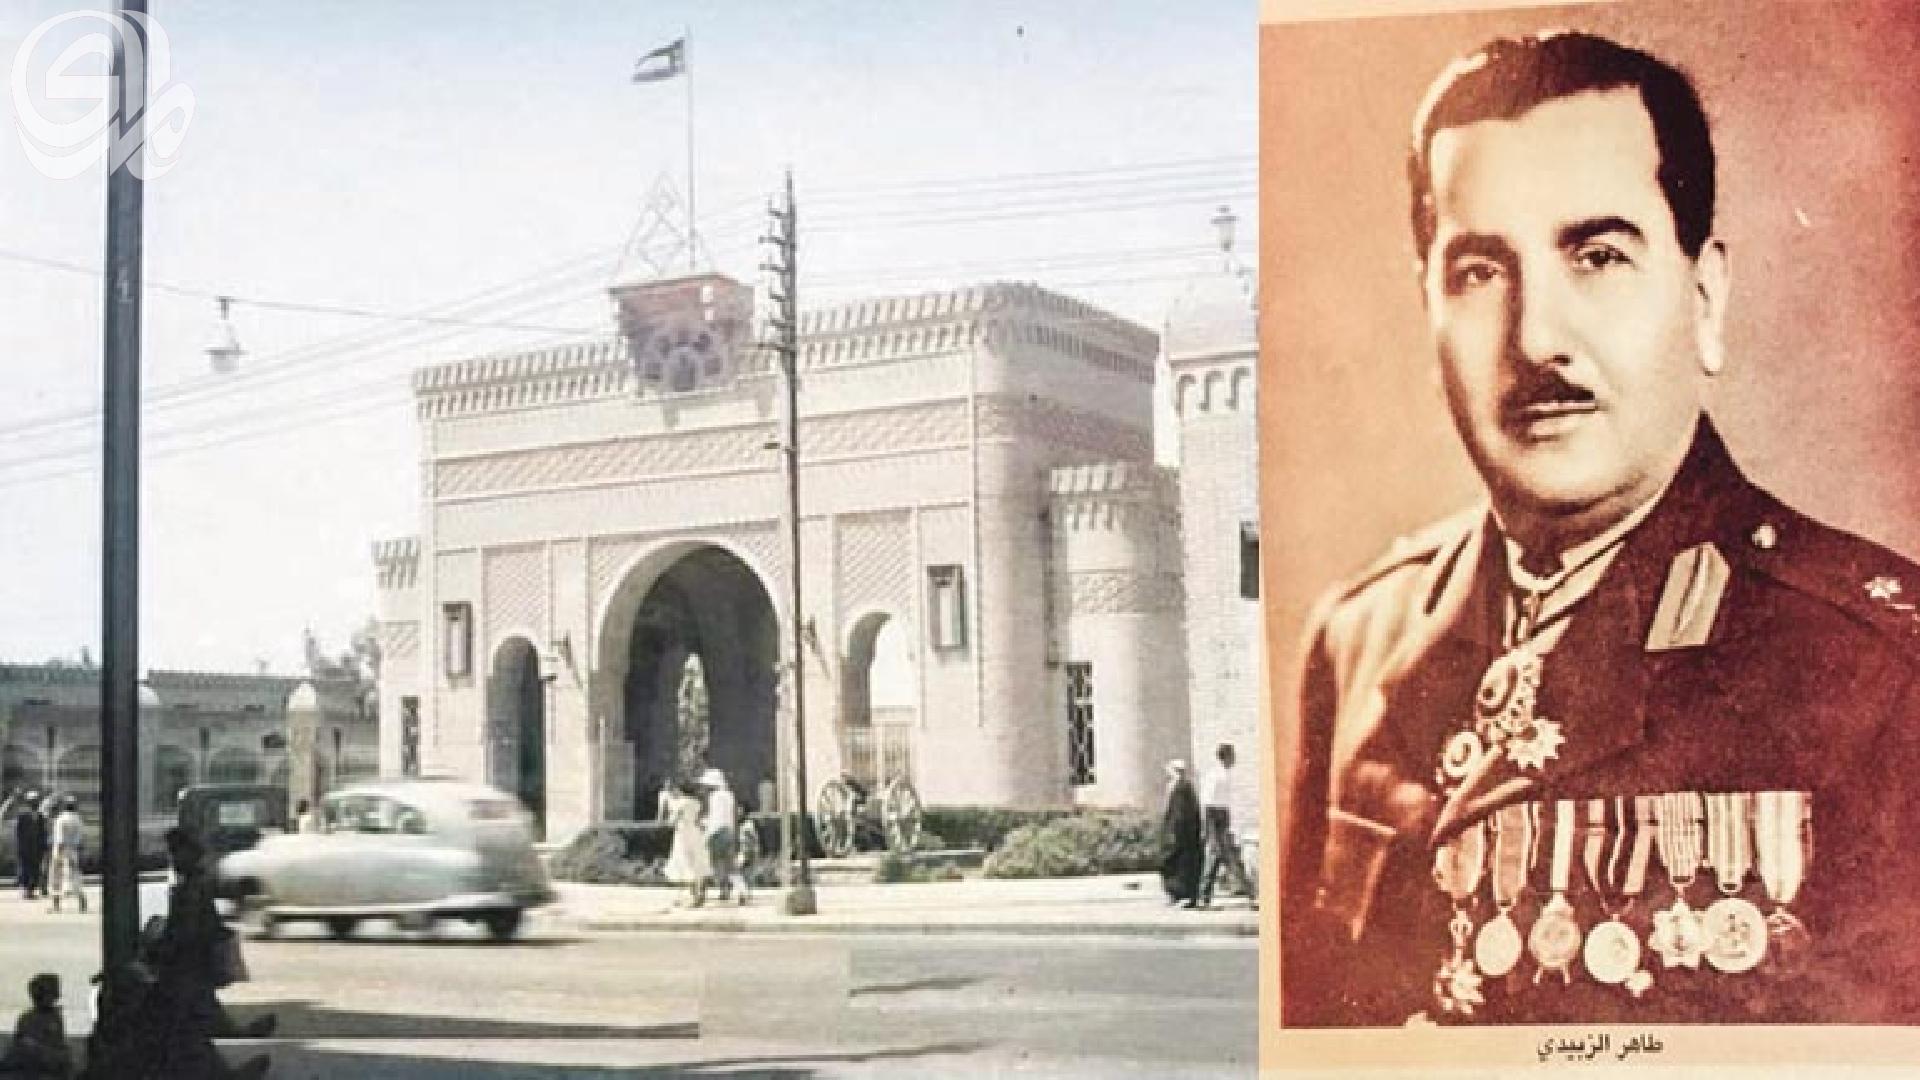 مئوية تأسيس الجيش العراقي..من ذكريات عسكري قديم ..هكذا التحقت بوزارة الدفاع سنة 1921